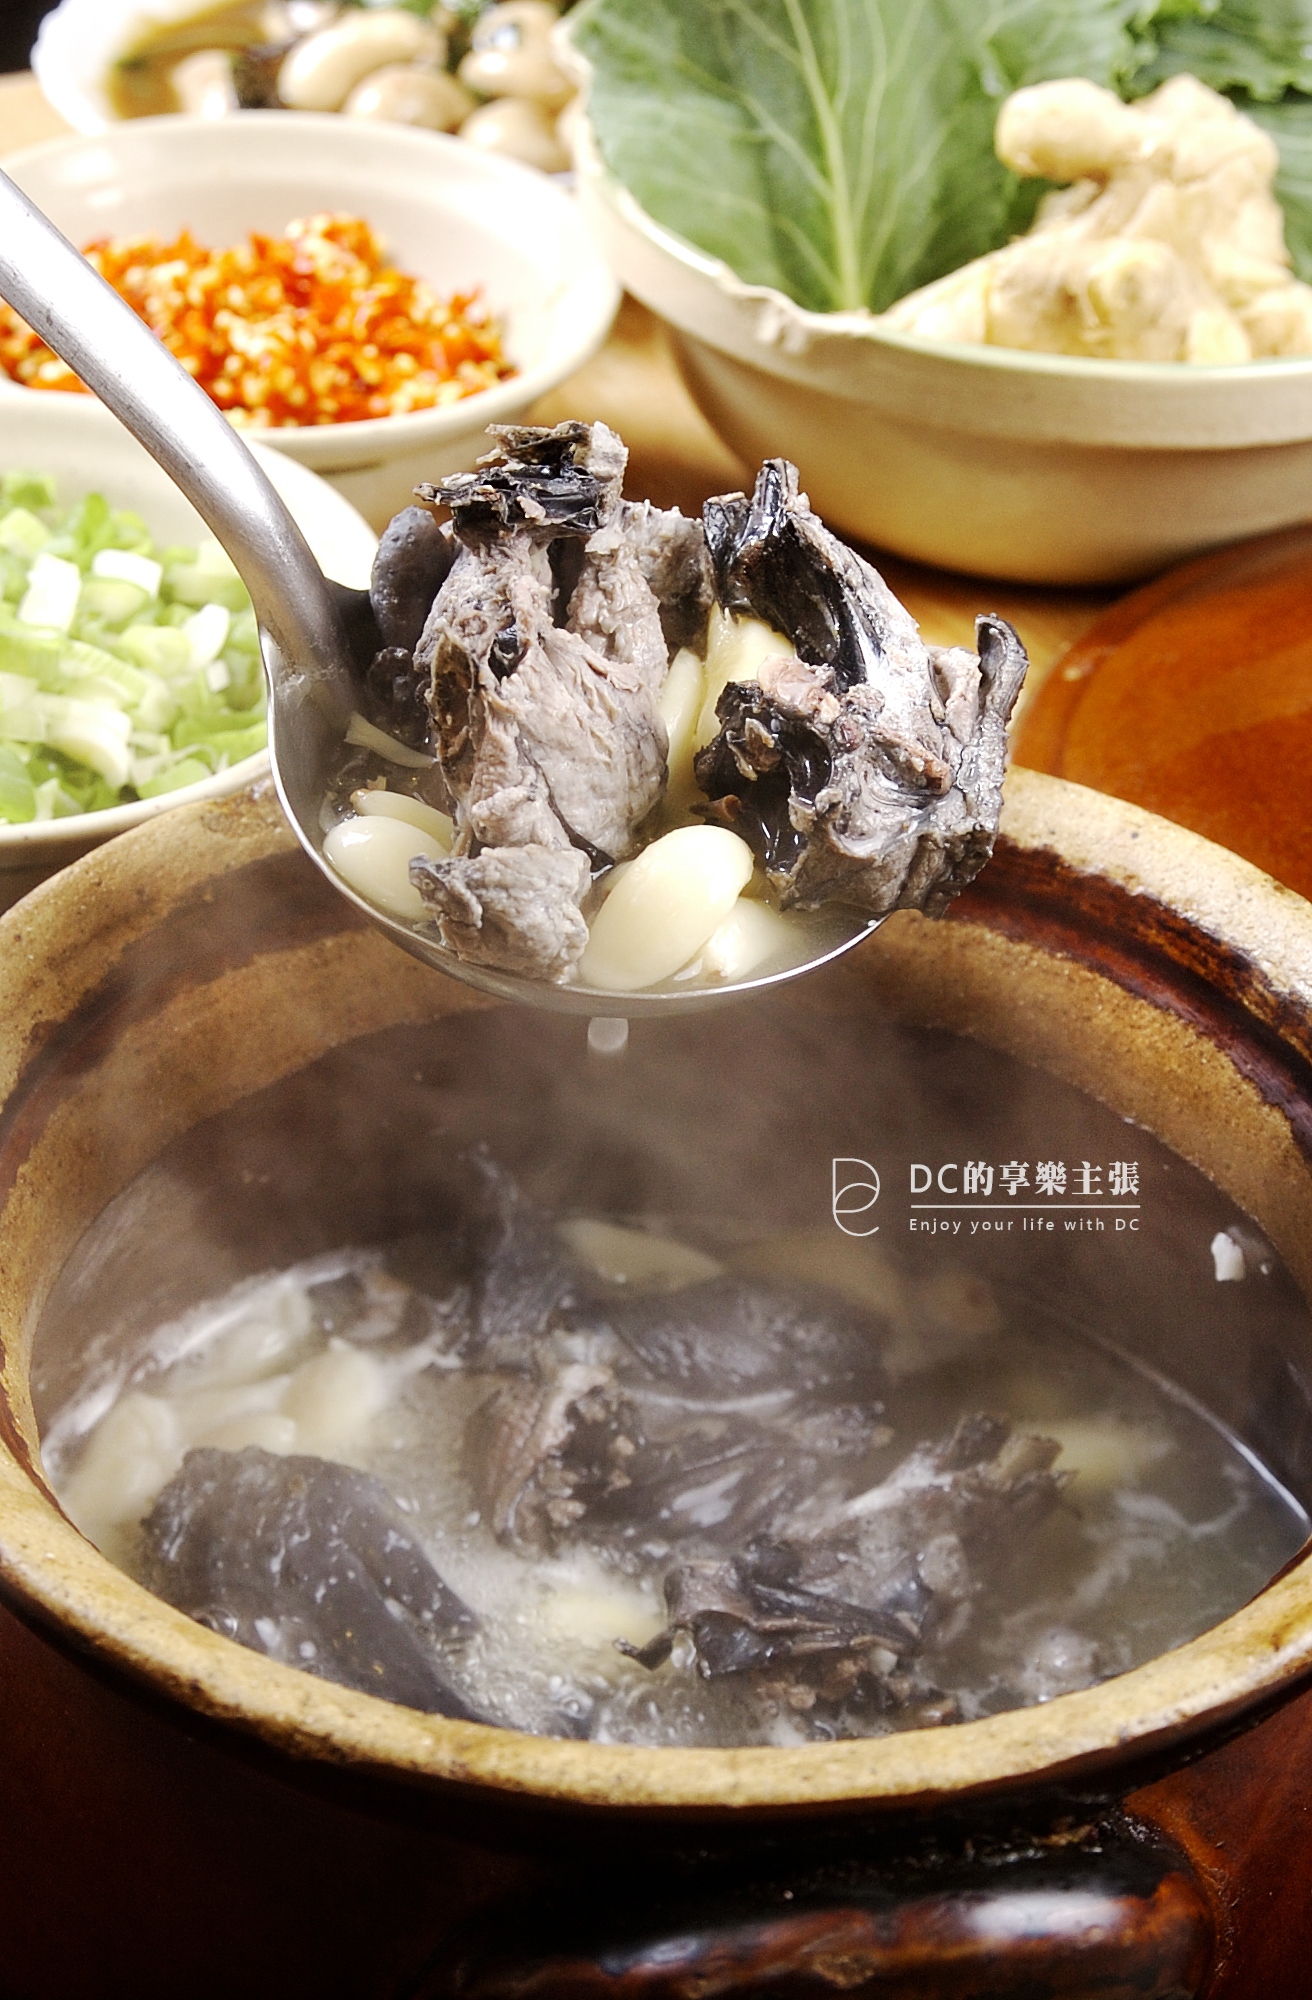 [食記] 台中 潮州羅燒酒雞 15種雞湯 價格實在